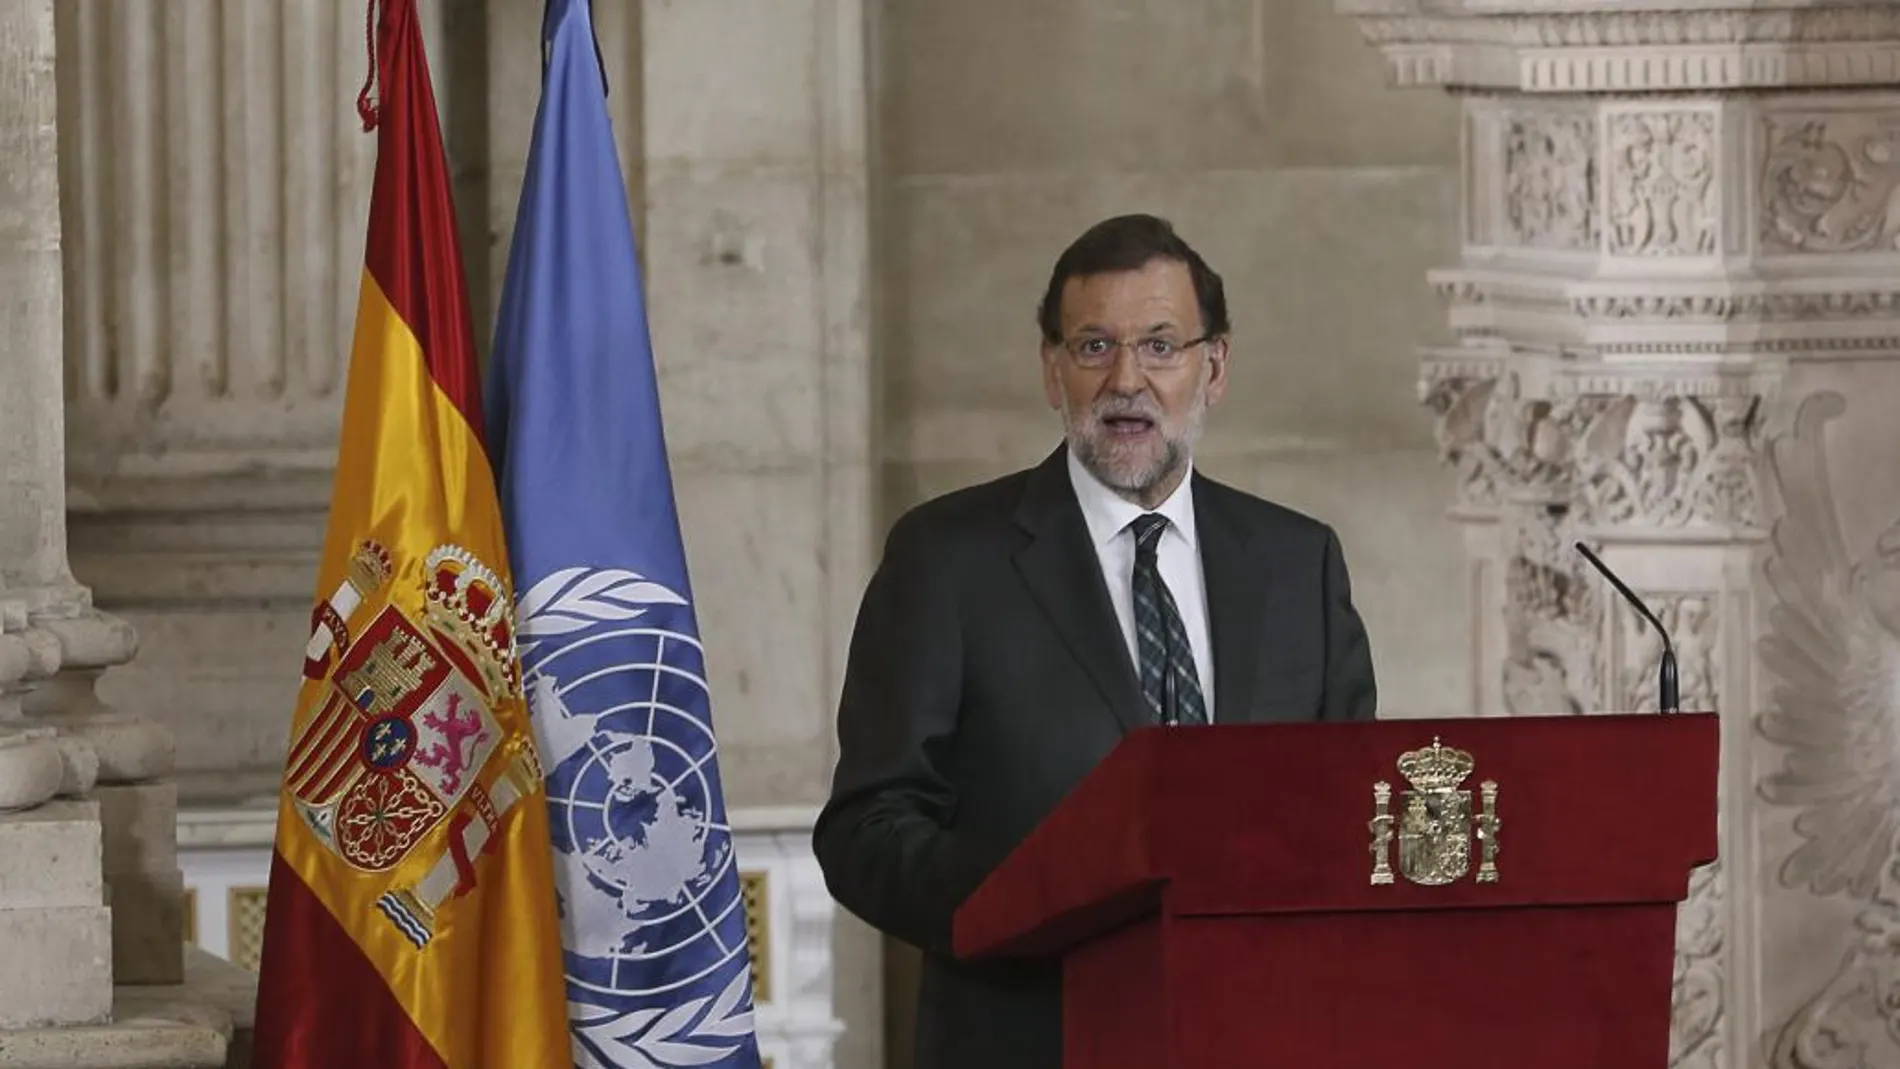 El presidente del Gobierno, Mariano Rajoy, durante su intervención en el acto solemne que se celebra para conmemorar el 70 aniversario de la Carta de las Naciones Unidas